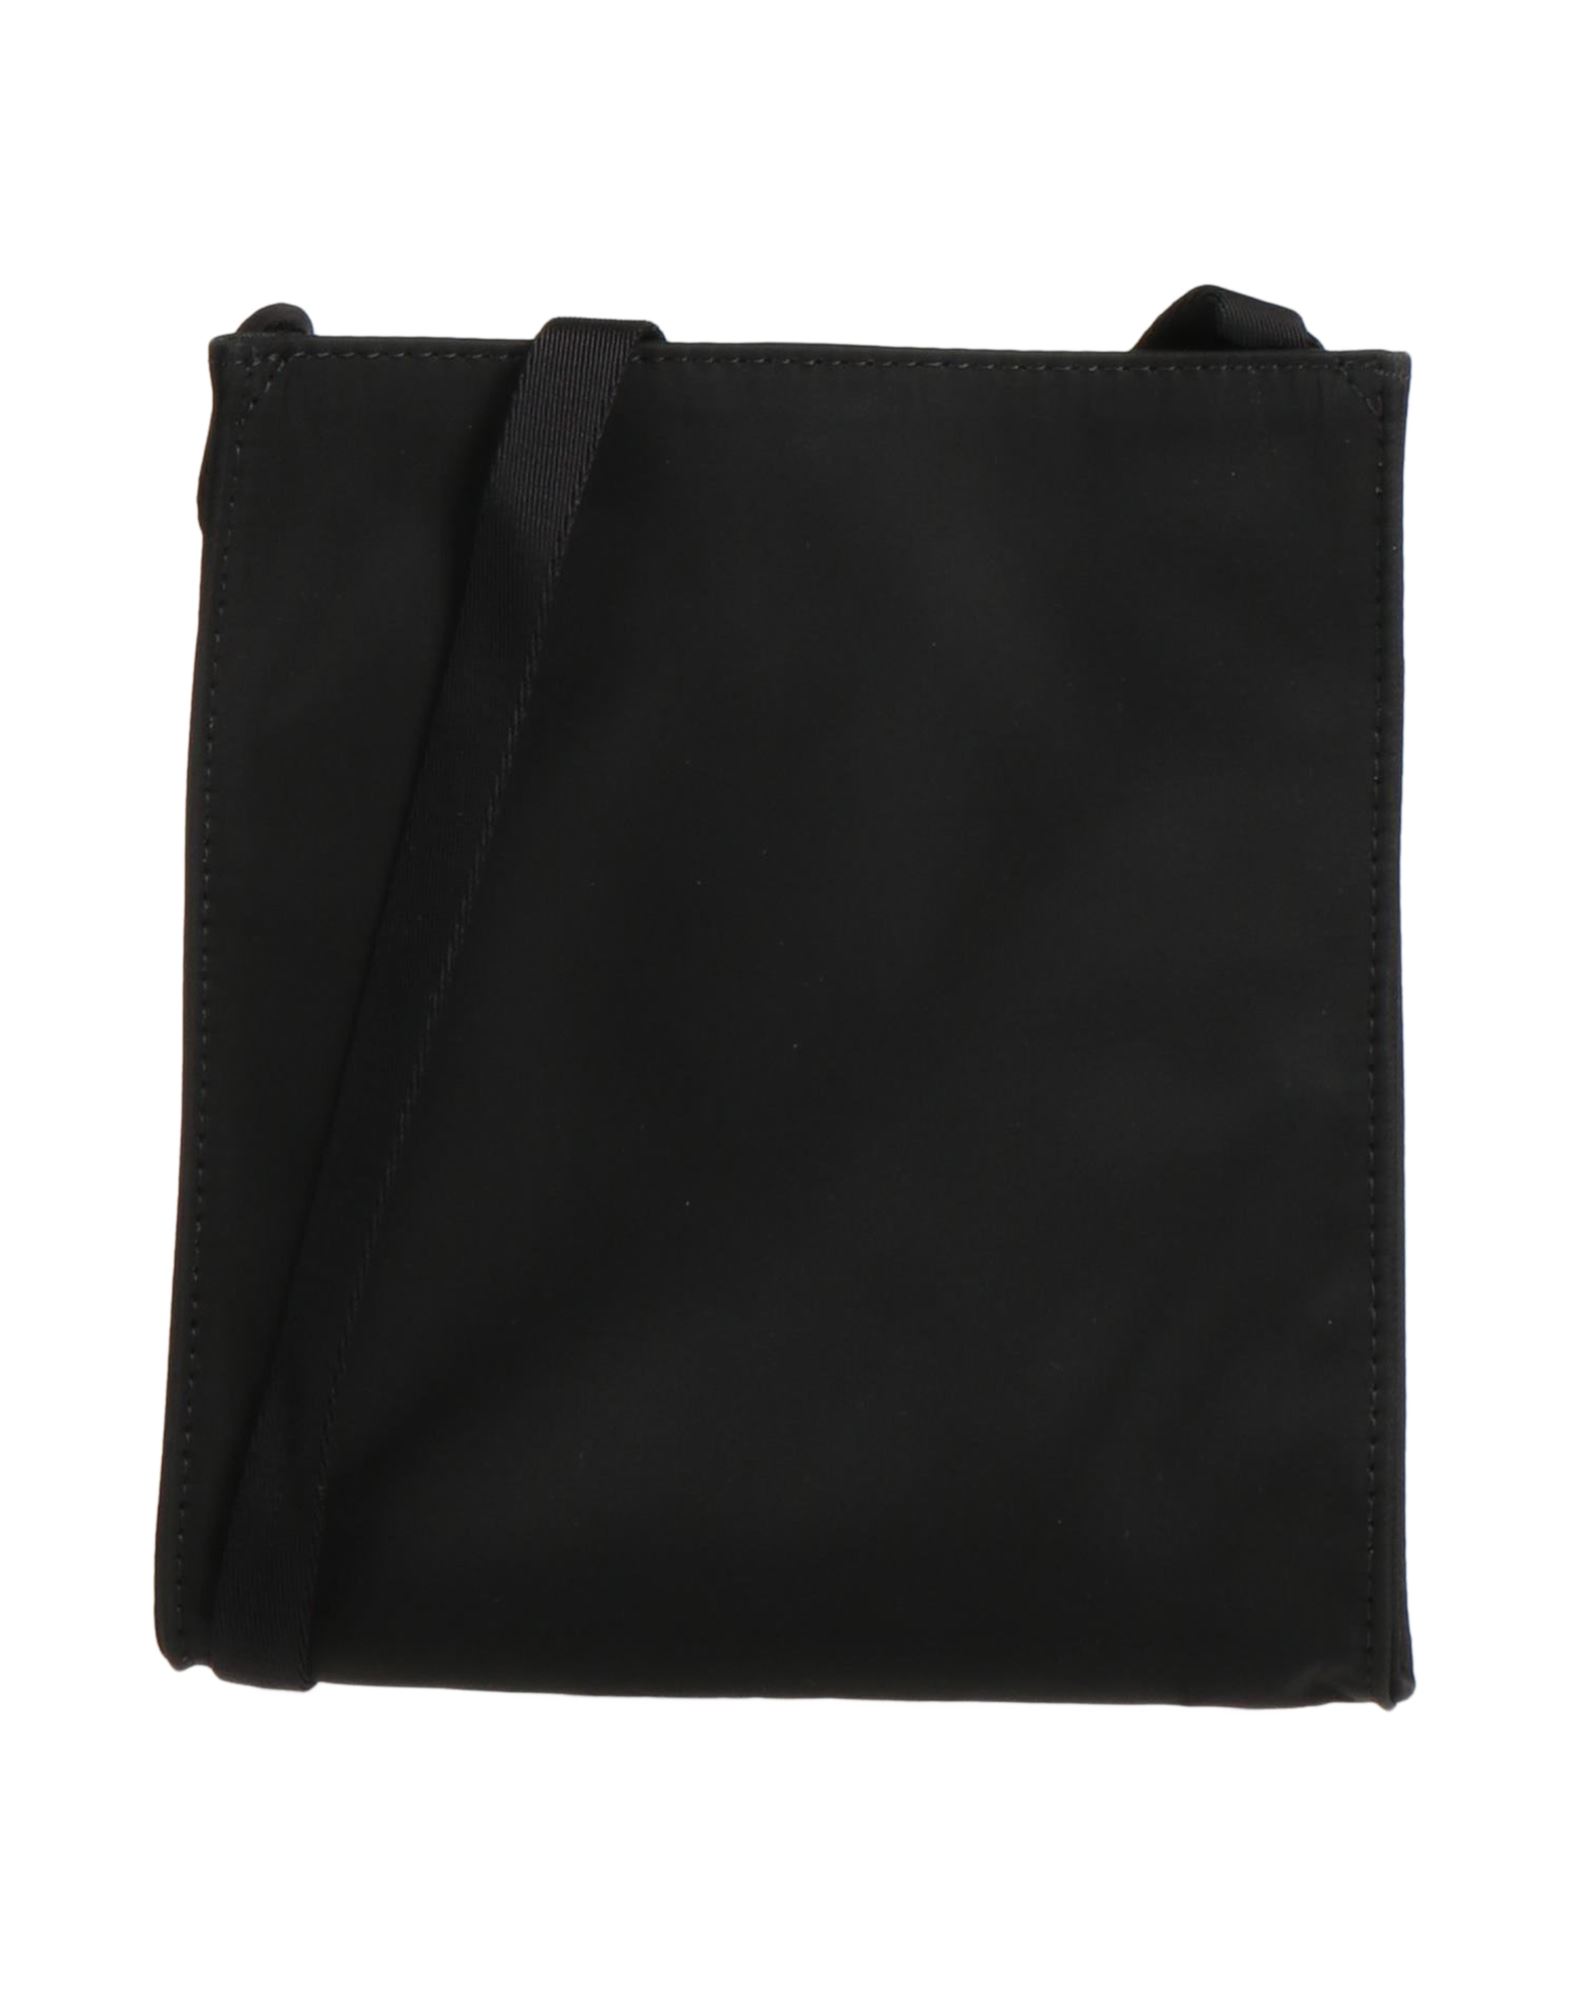 Alyx Handbags In Black